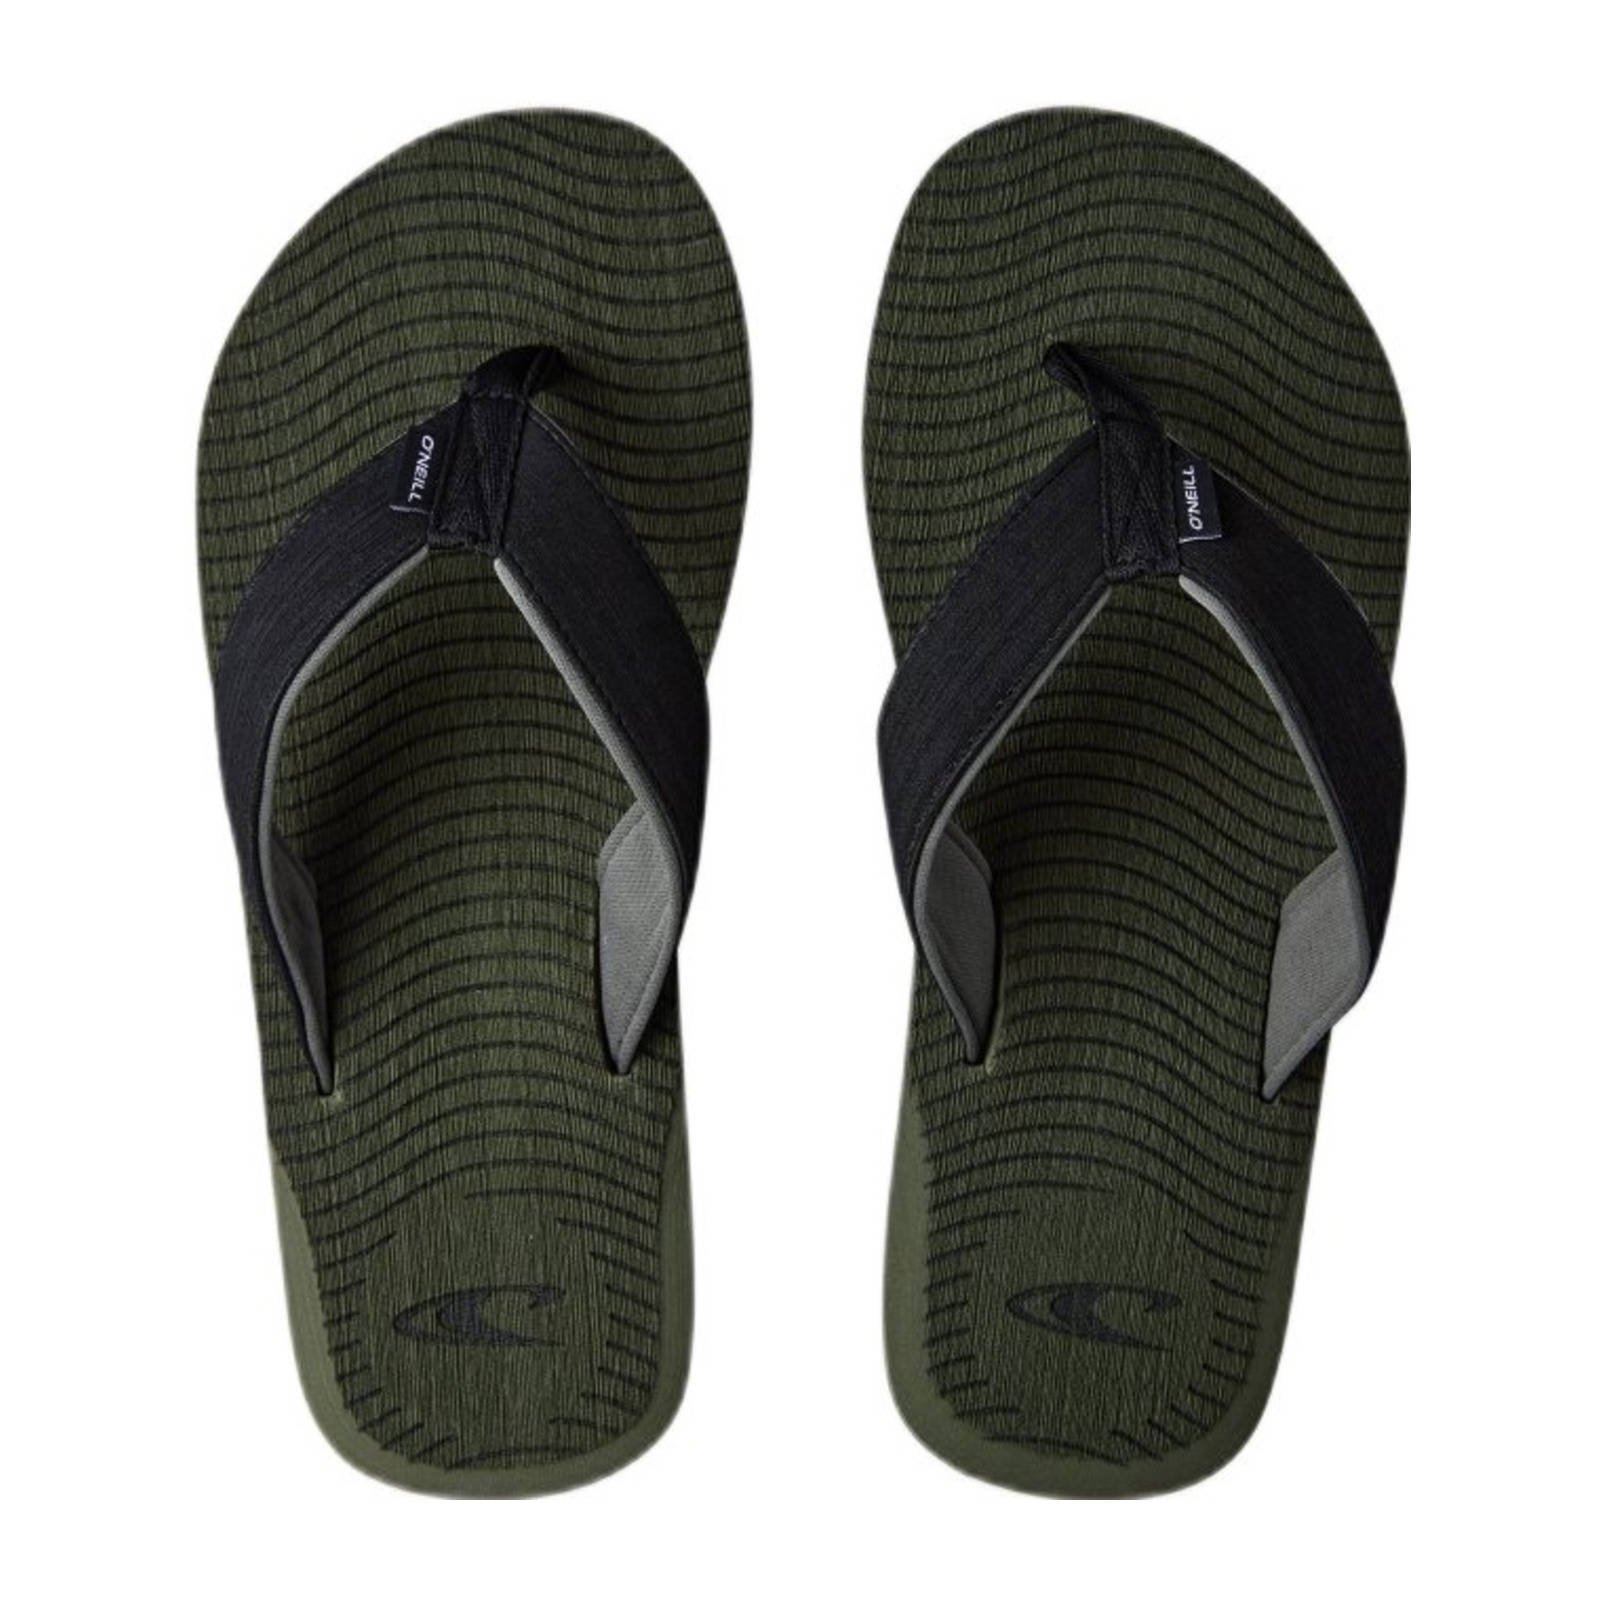 O'Neill Koosh Sandals teenslippers zwart/groen online kopen